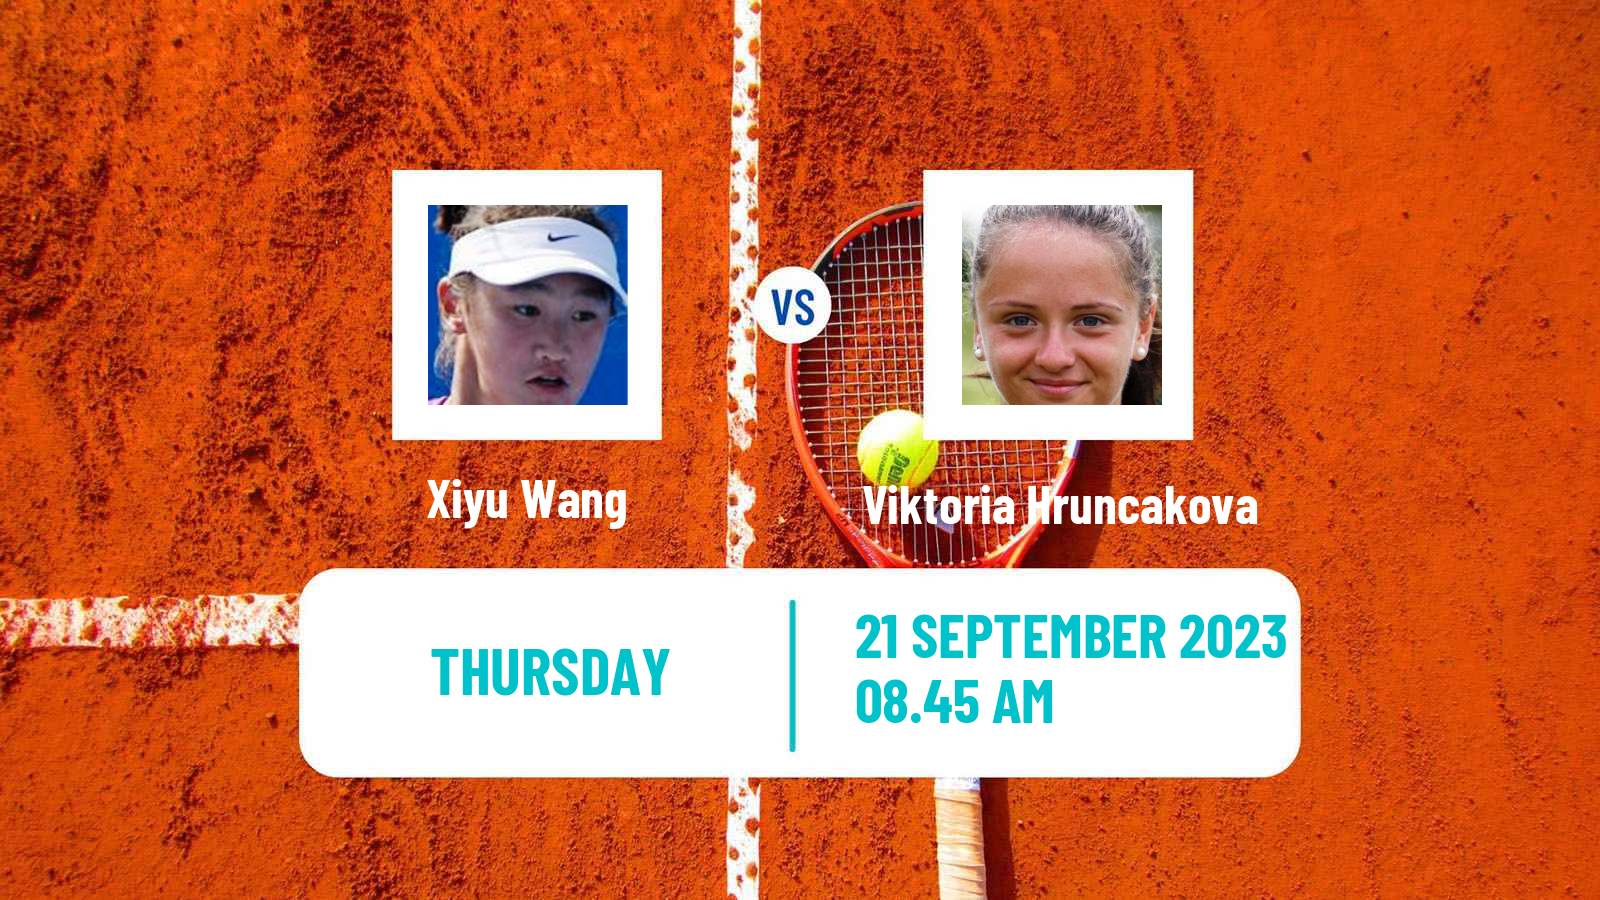 Tennis WTA Guangzhou Xiyu Wang - Viktoria Hruncakova